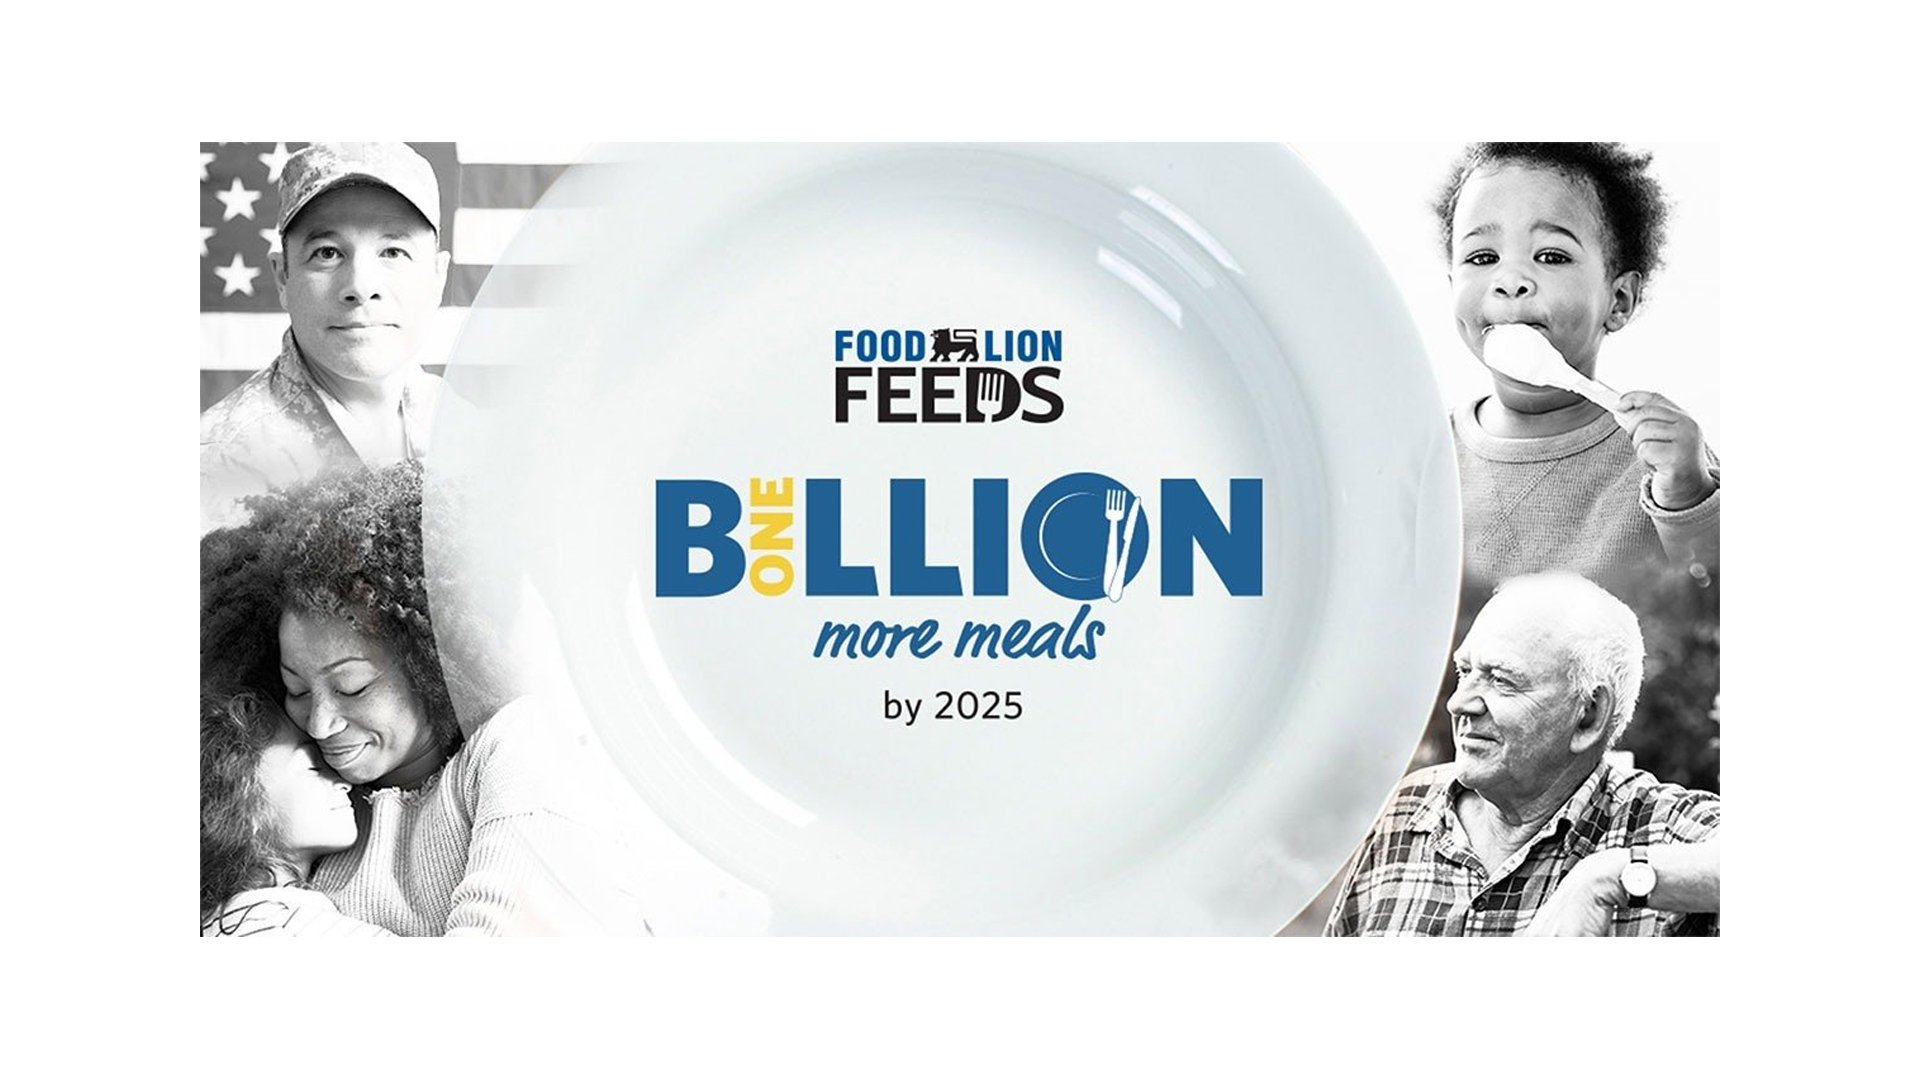 flf-billion-more-meals.jpg.adapt_.full_.high_.jpg